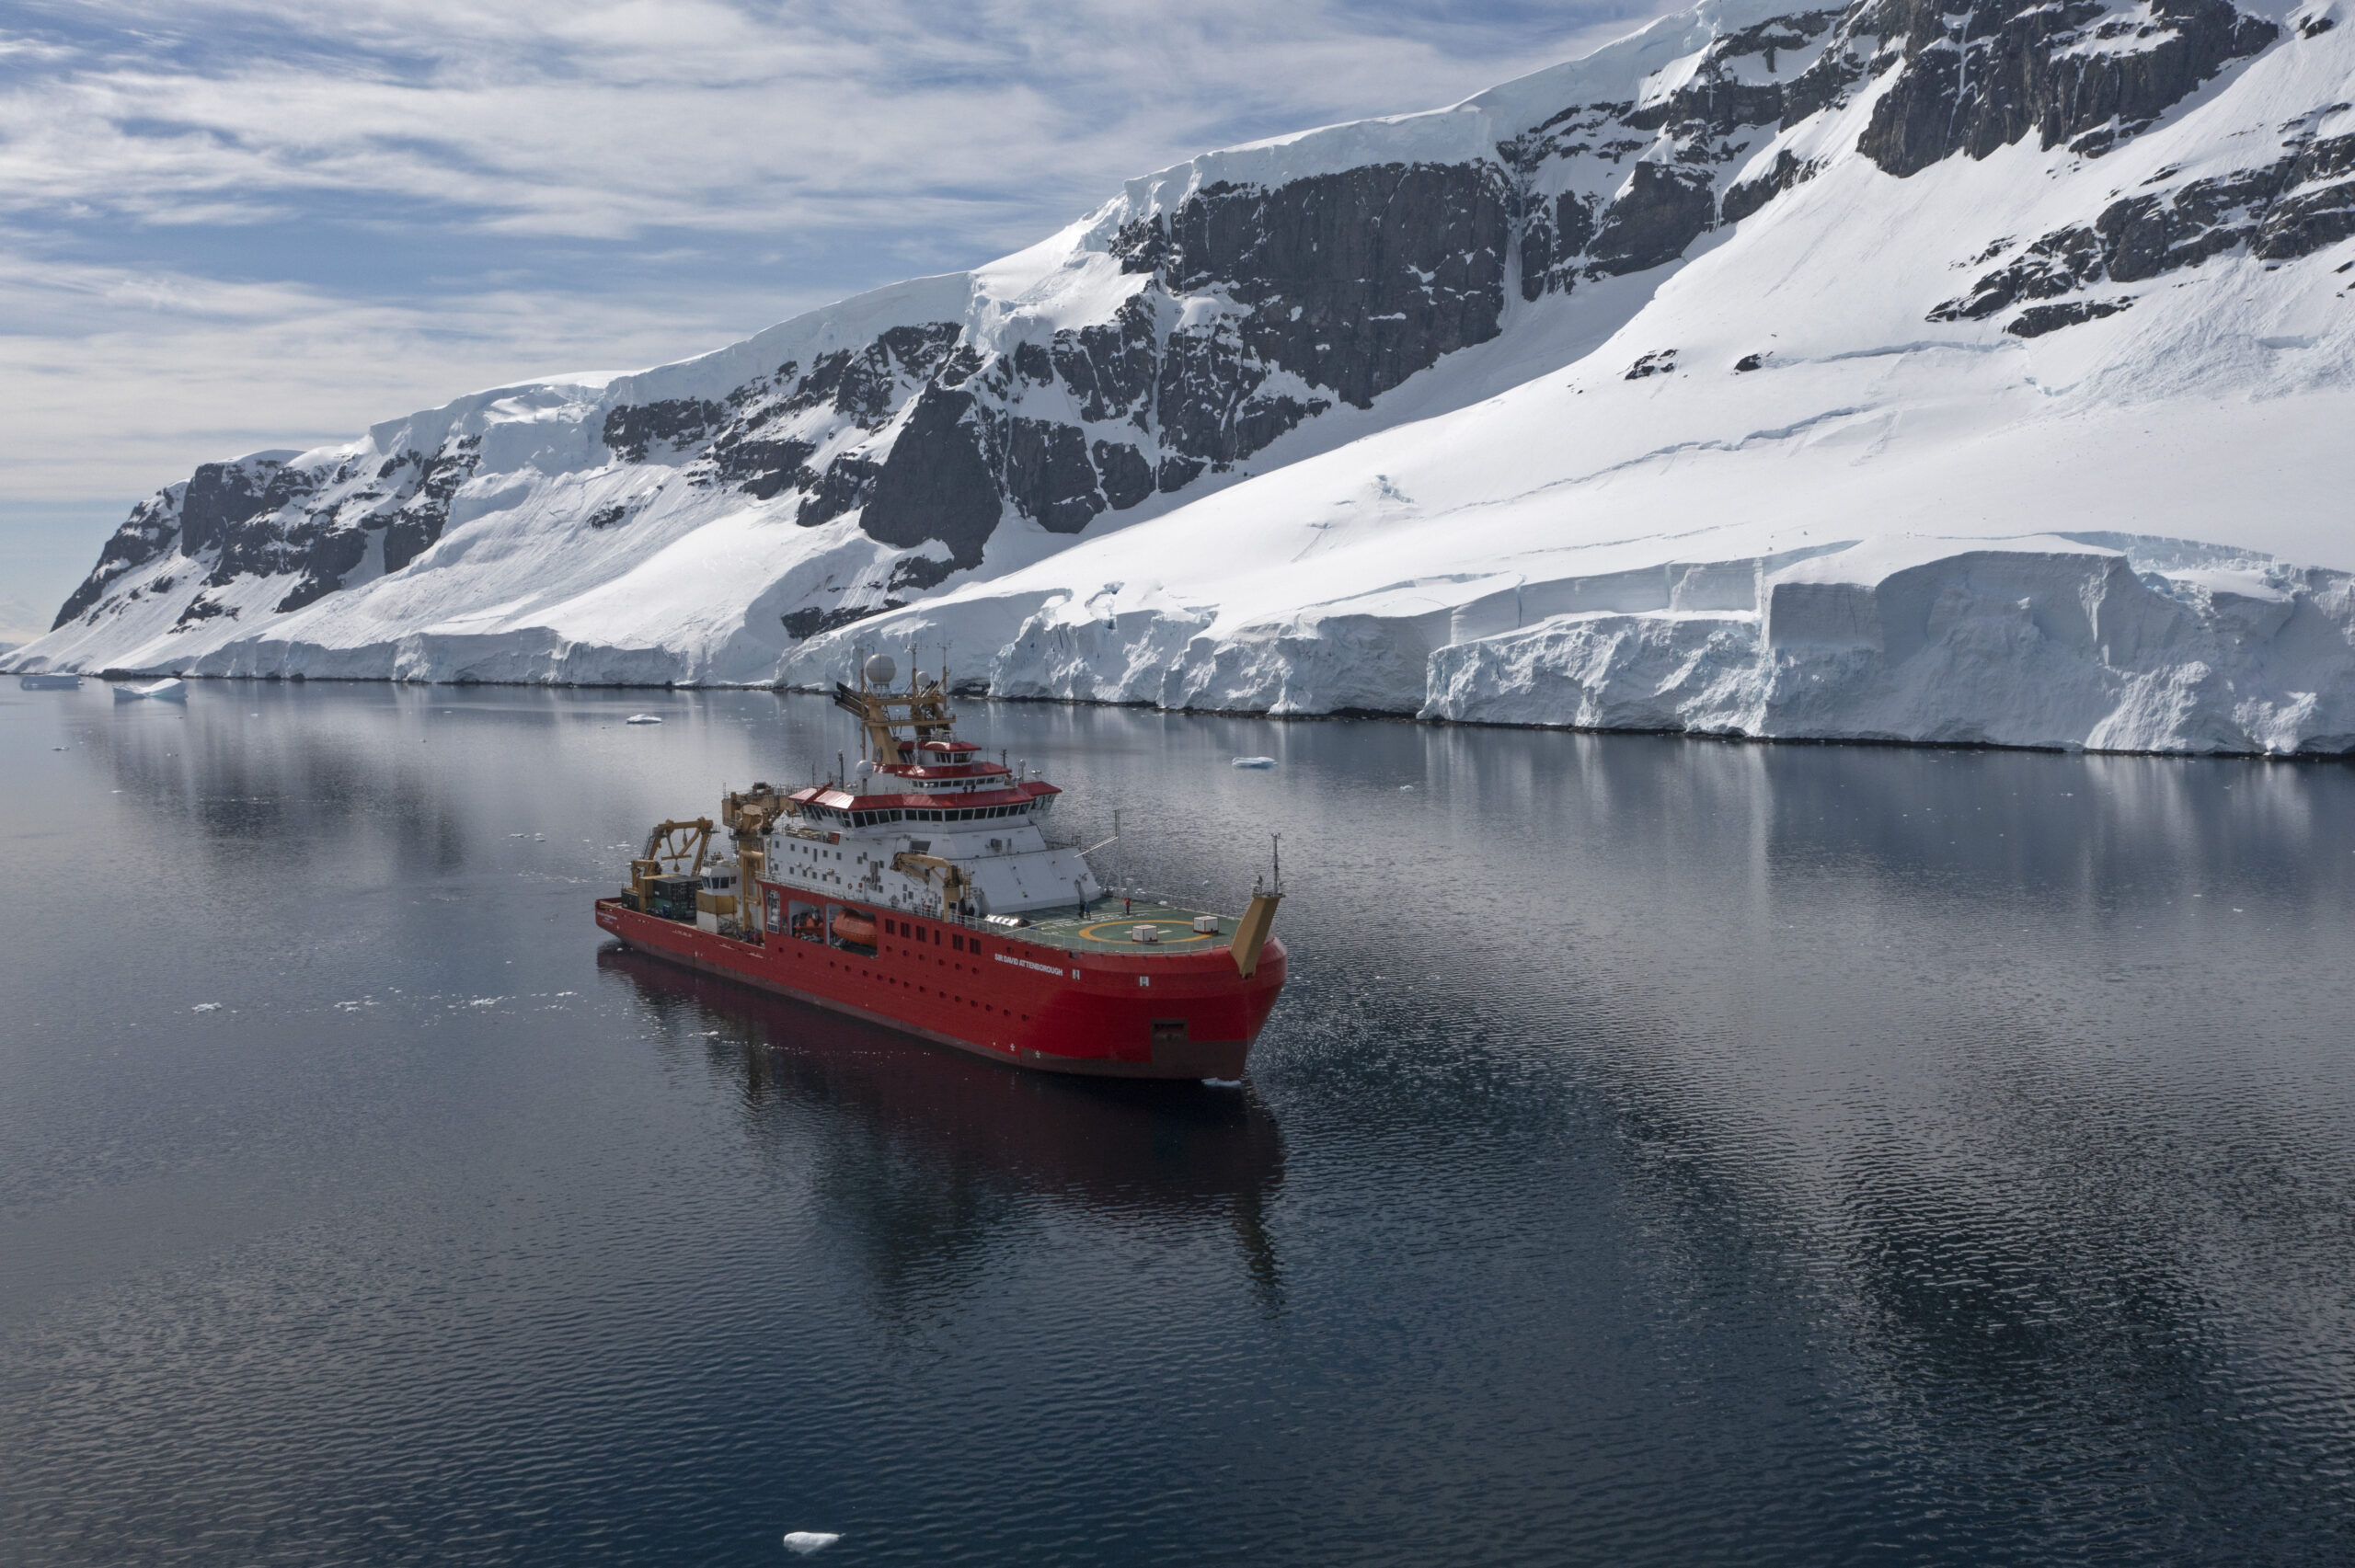 영국 남극 조사의 이정표 달성 - 탄소 활용 능력 프로젝트